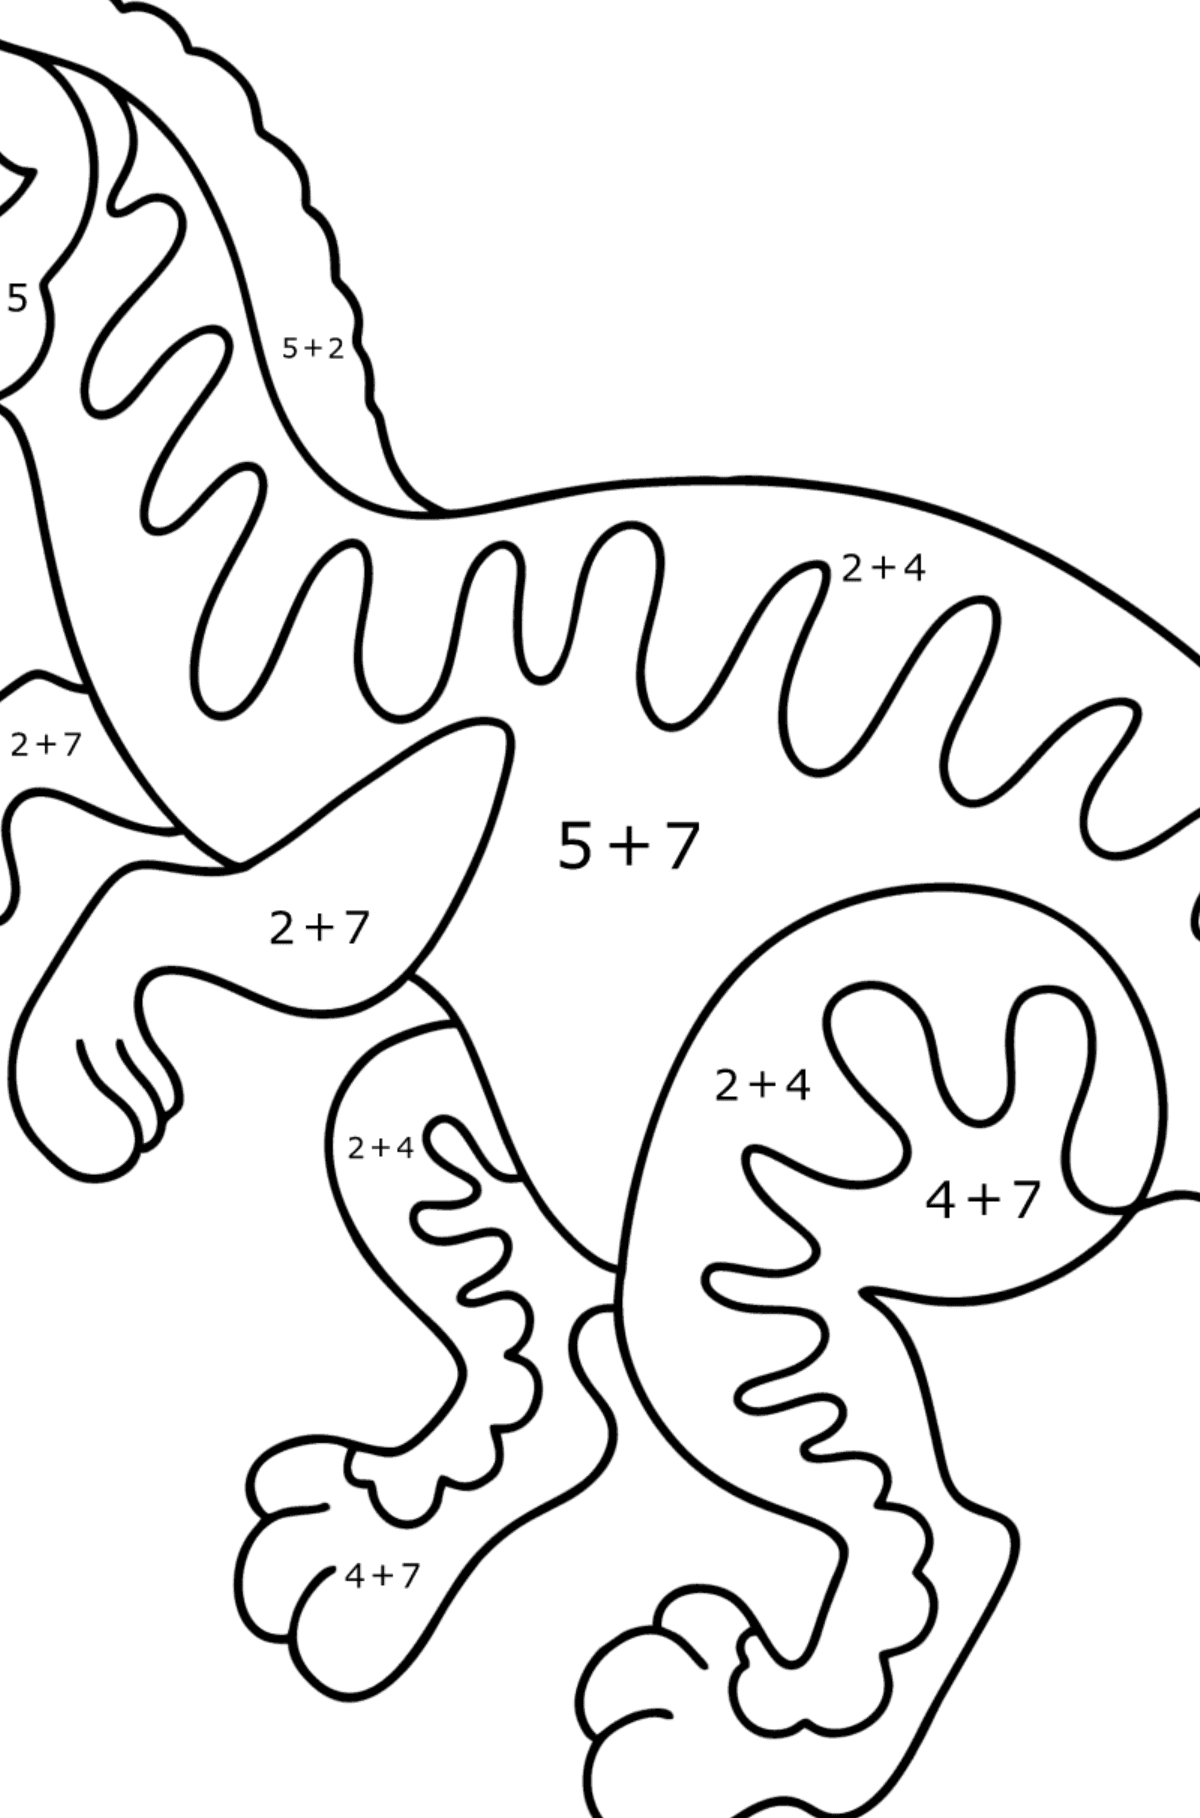 Dibujo de Velociraptor para colorear - Colorear con Matemáticas - Sumas para Niños